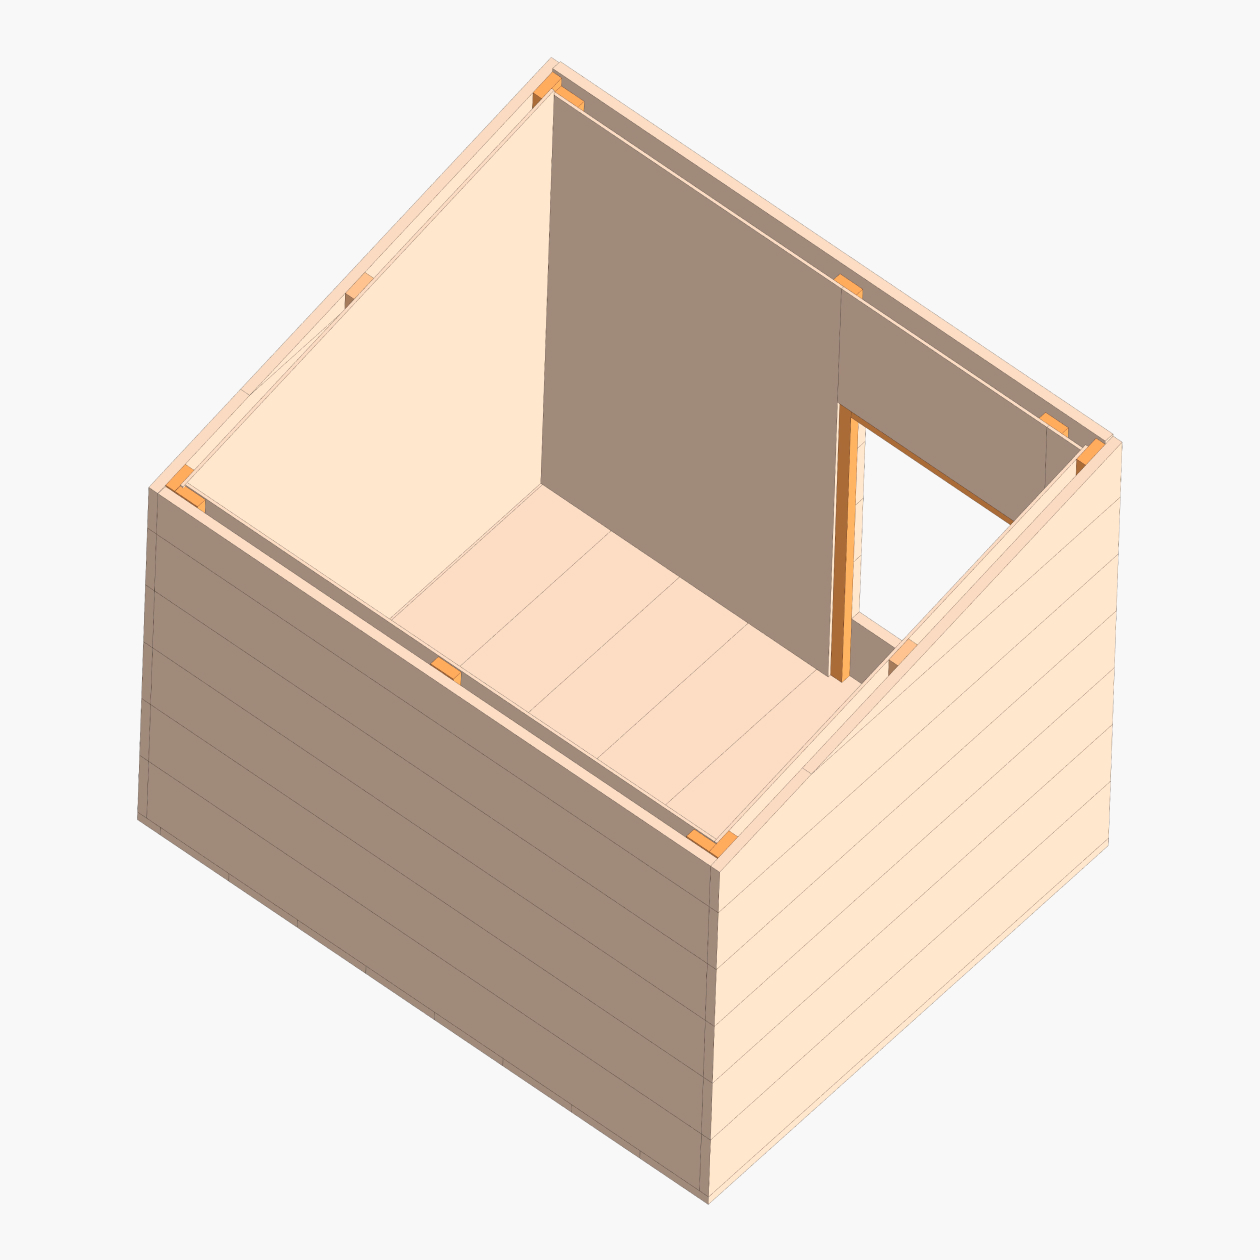 3D-модель обшитой изнутри будки